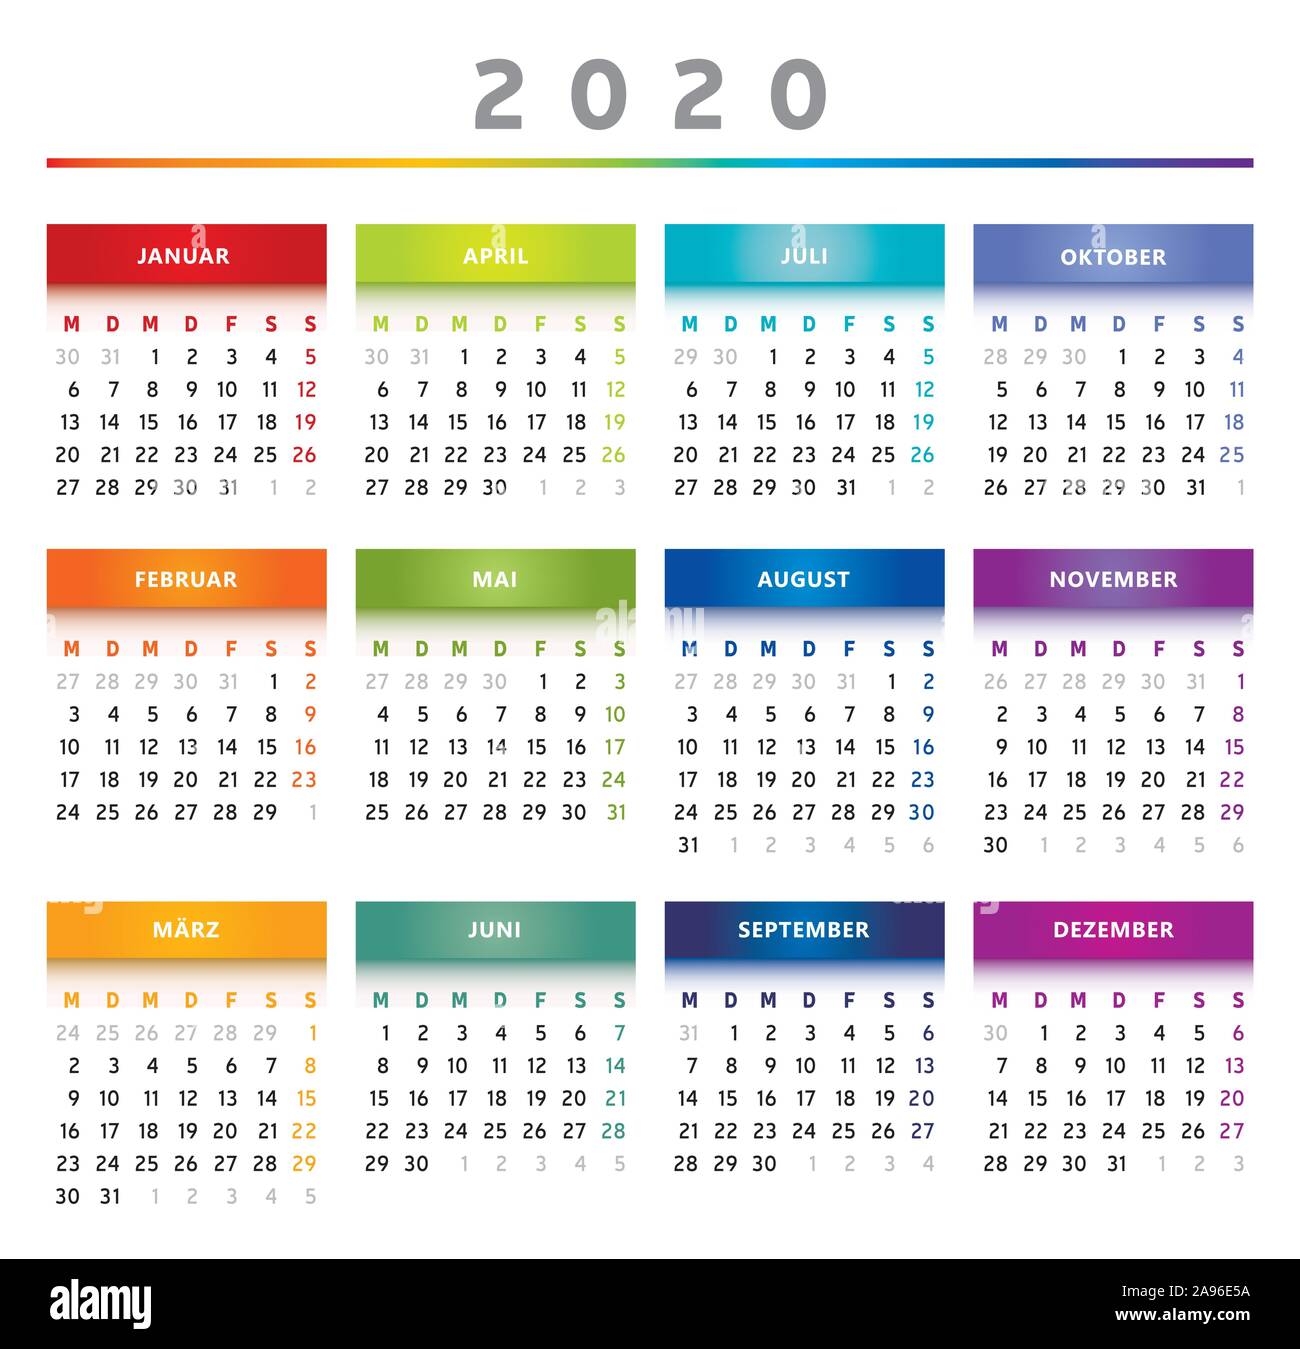 Calendrier 2020 - langue Allemande - - multicolore 4 trimestres Illustration de Vecteur